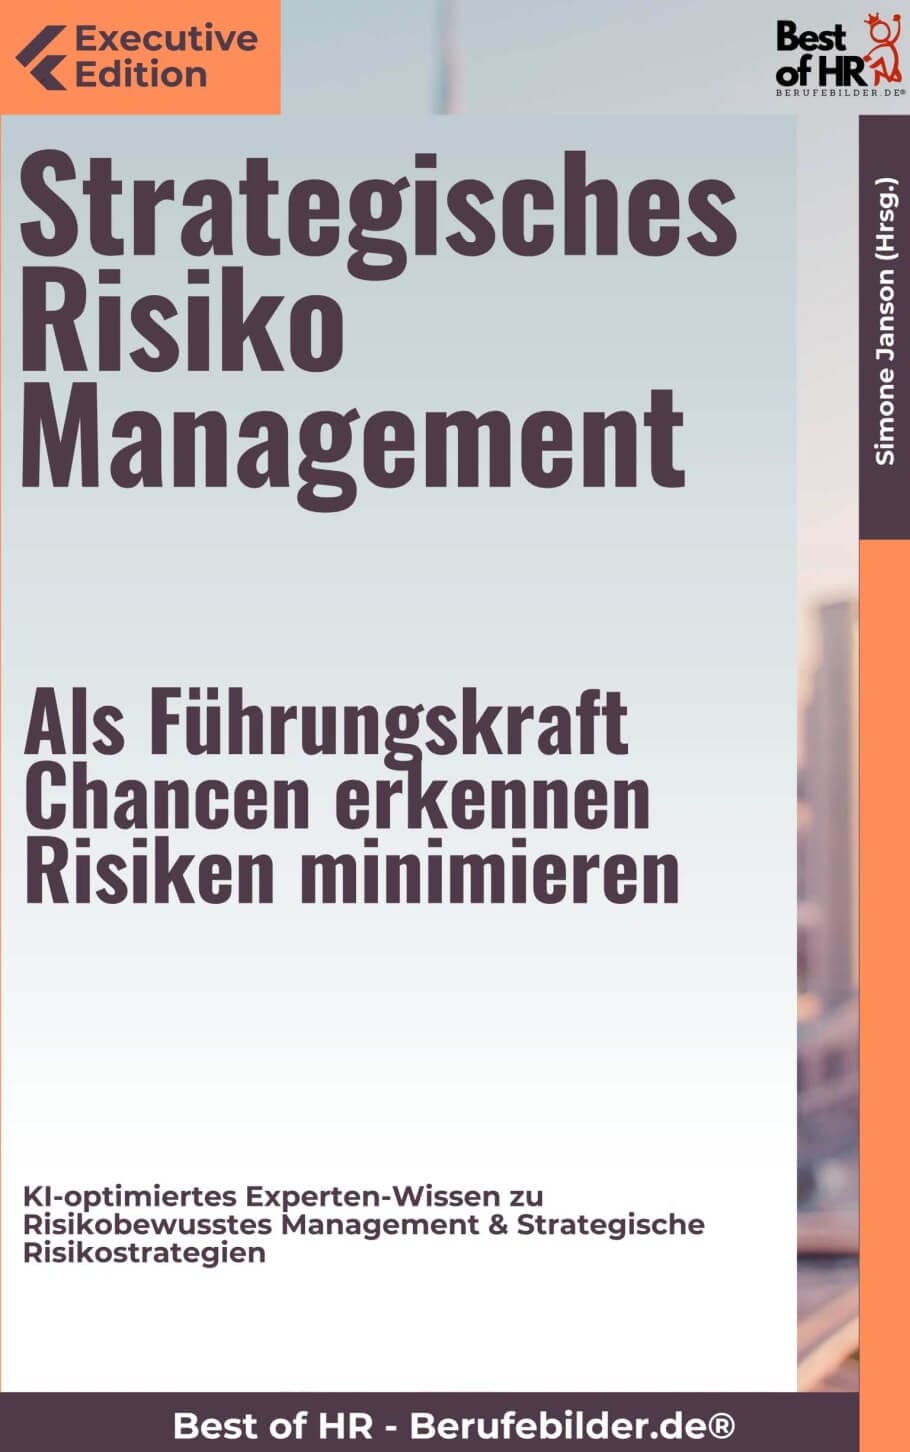 Strategisches Risiko Management – Als Führungskraft Chancen erkennen, Risiken minimieren